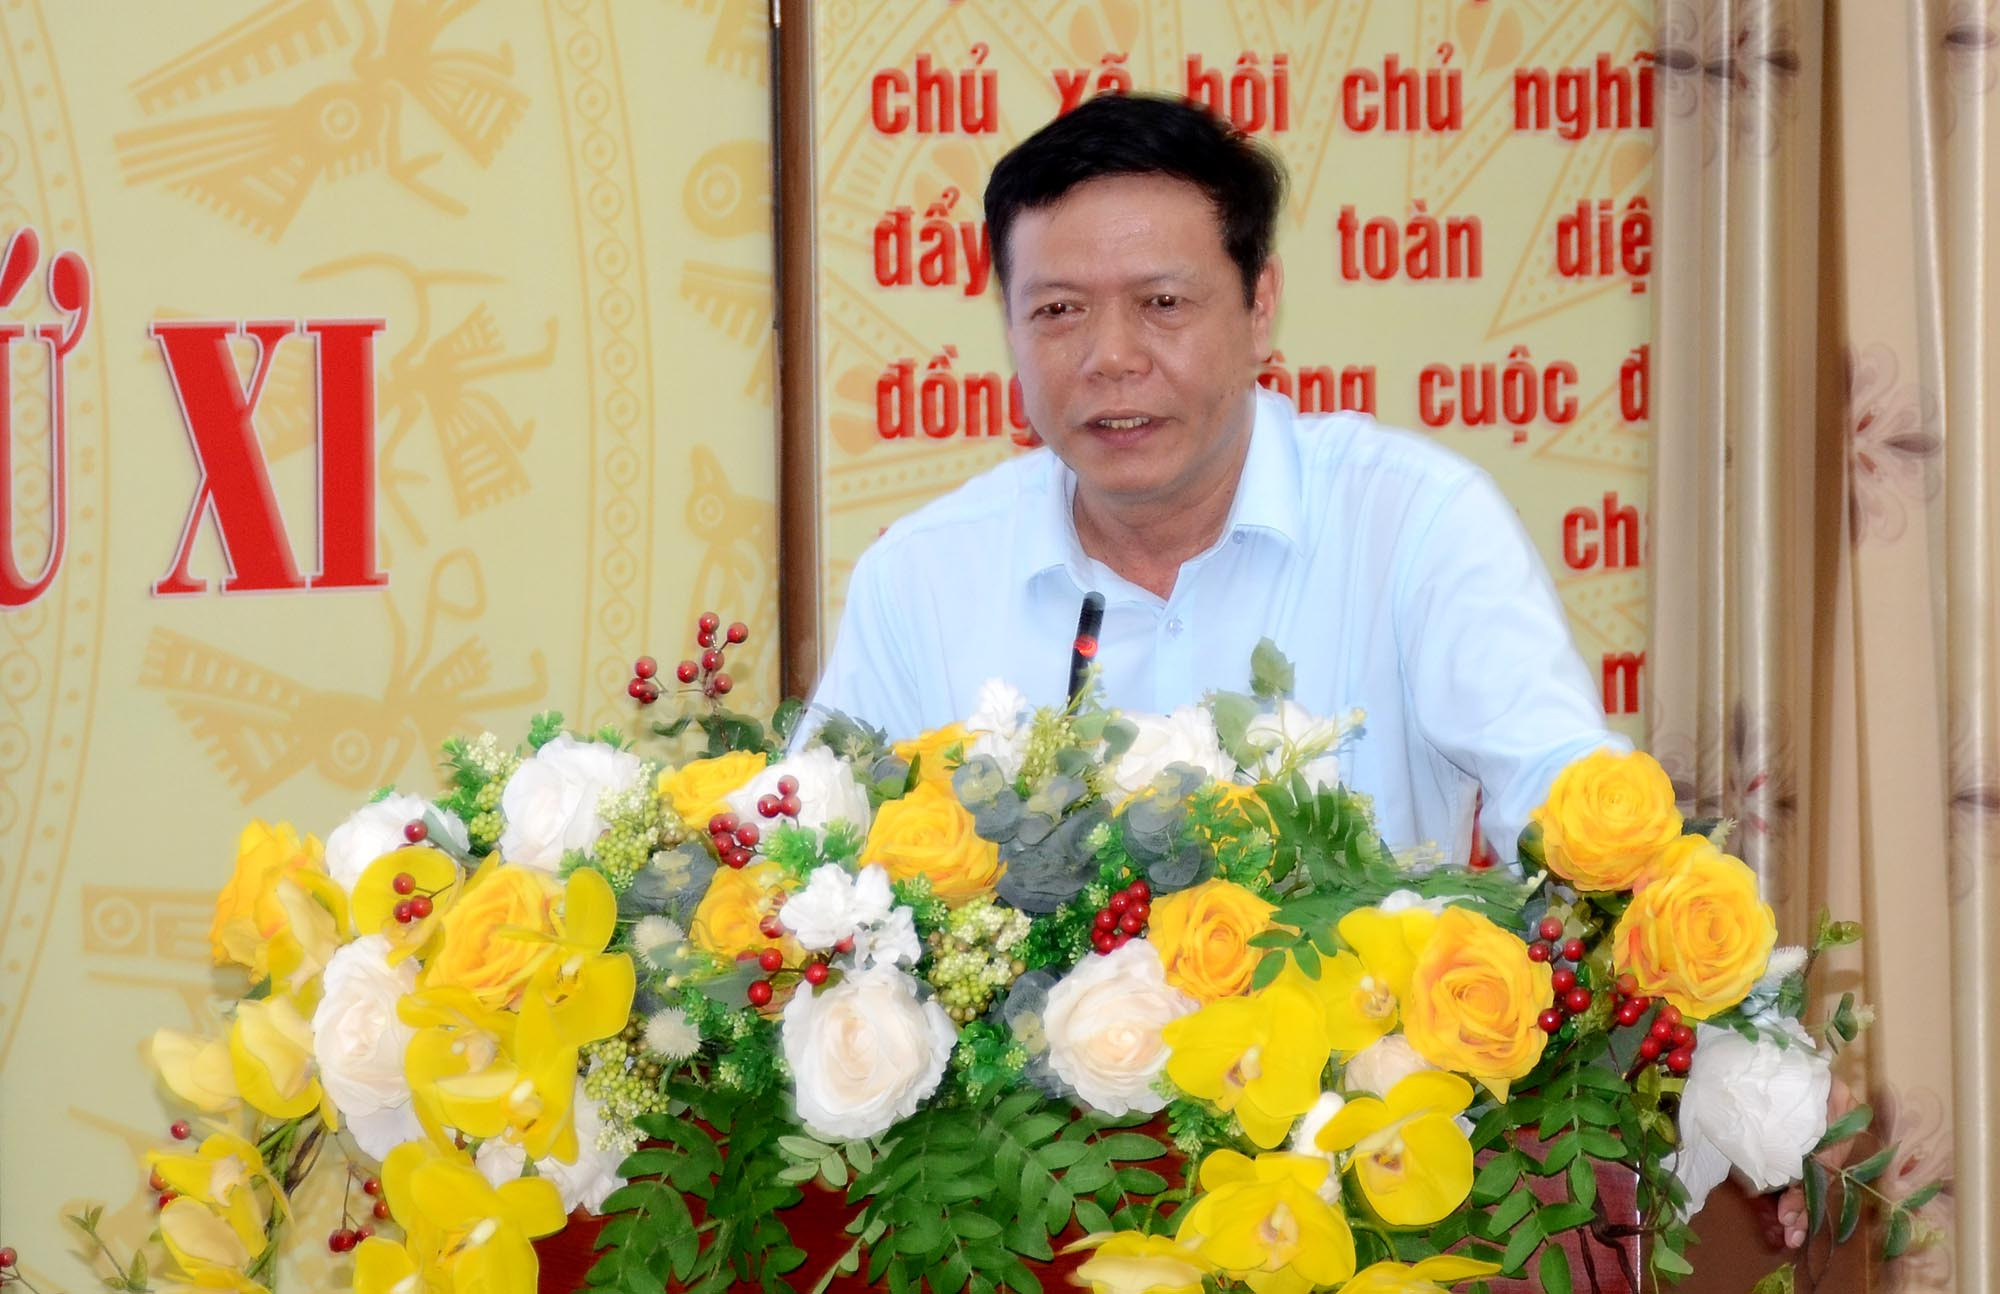 Dược sĩ CKII Trần Minh Tuệ. Ảnh: Thành Chung